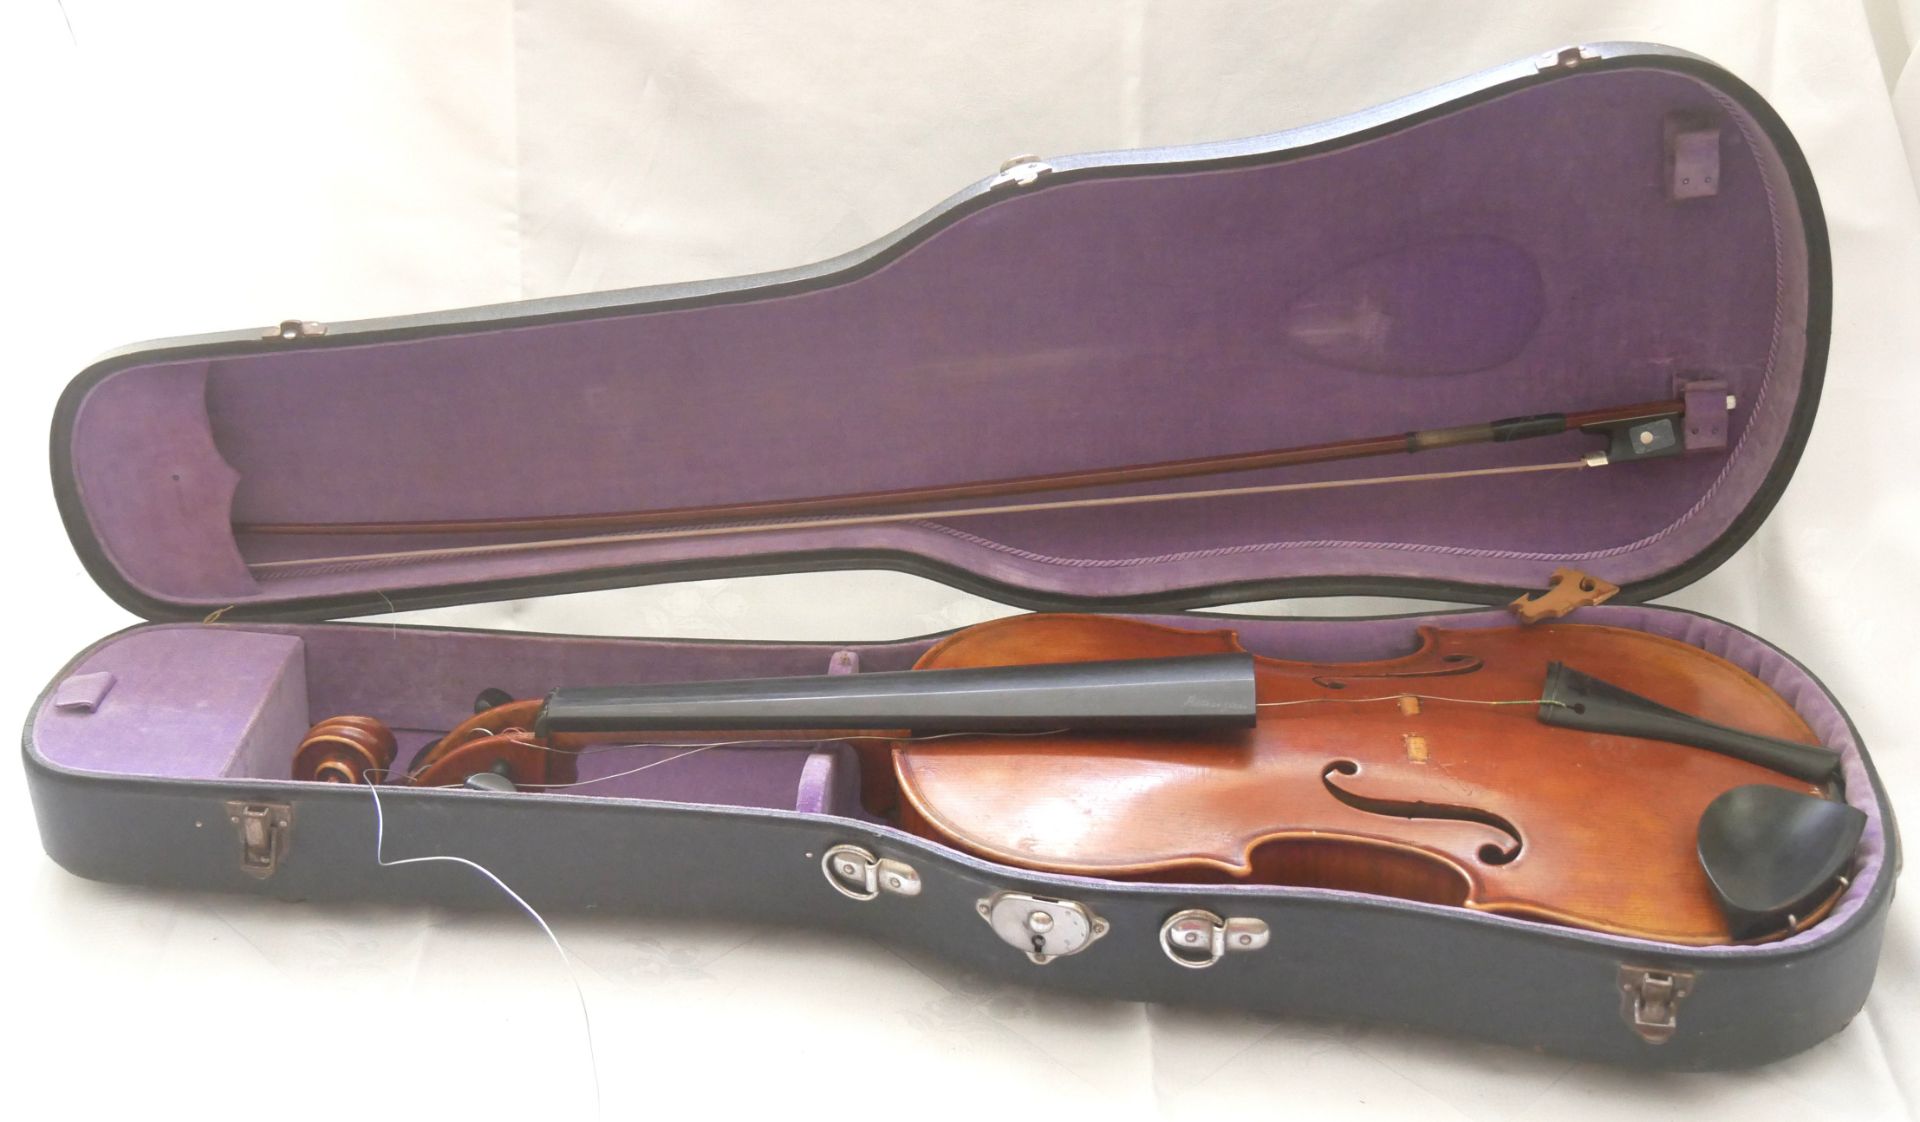 Violine zur Aufarbeitung, Innenzettel bezeichnet Felix Mori Costa, Fesicit Parmai, Anno 1834,